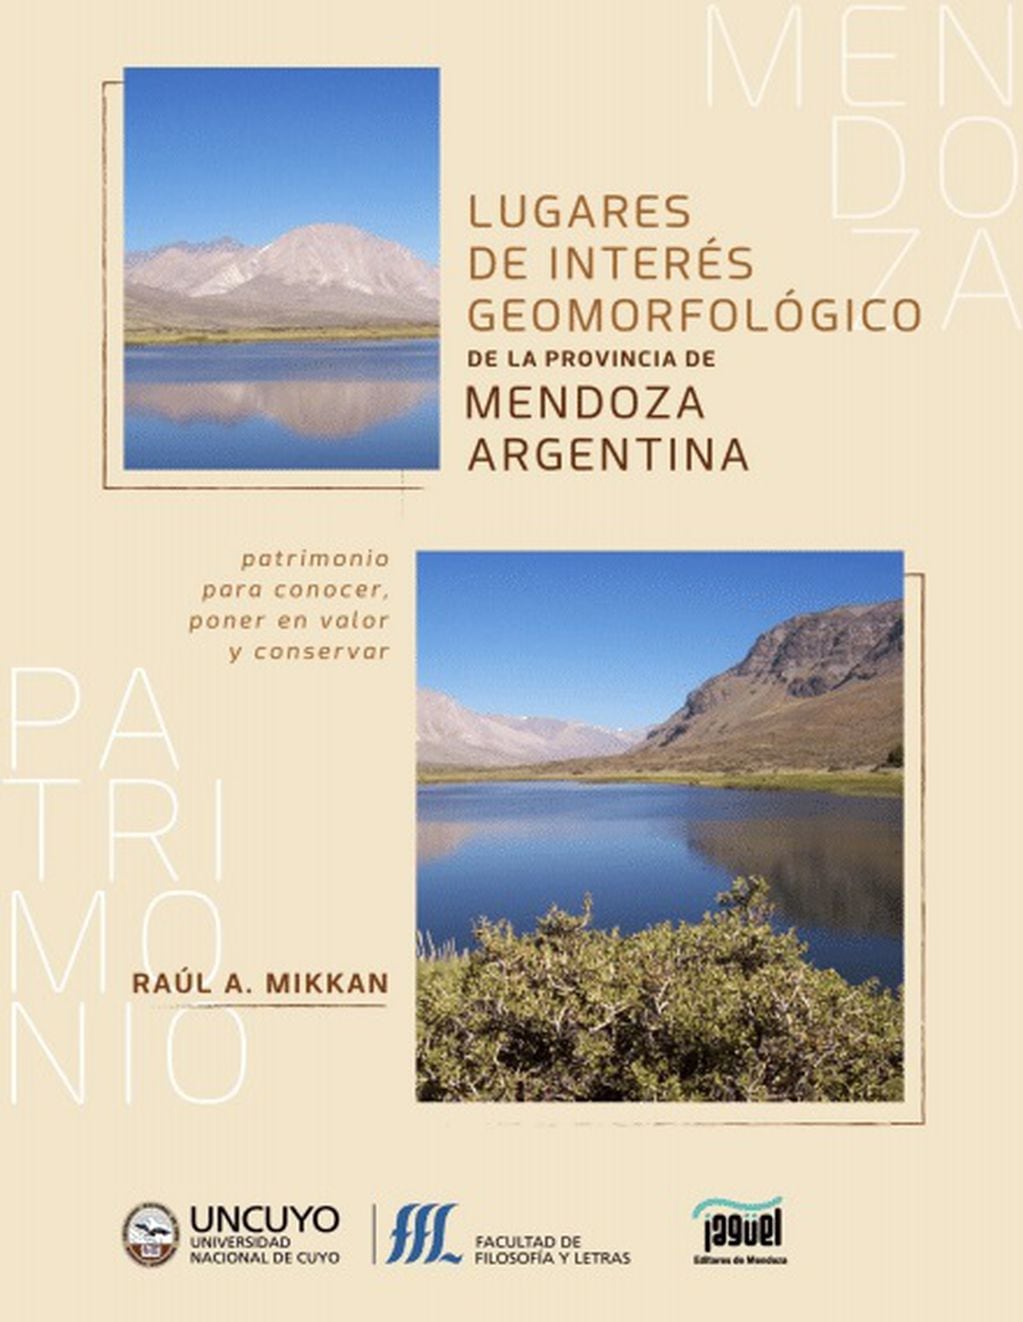 Tapa del libro de Mikkan: "Lugares de interés geomorfológico de la provincia de Mendoza", editado por Jaguel Ed. Foto: Gentileza